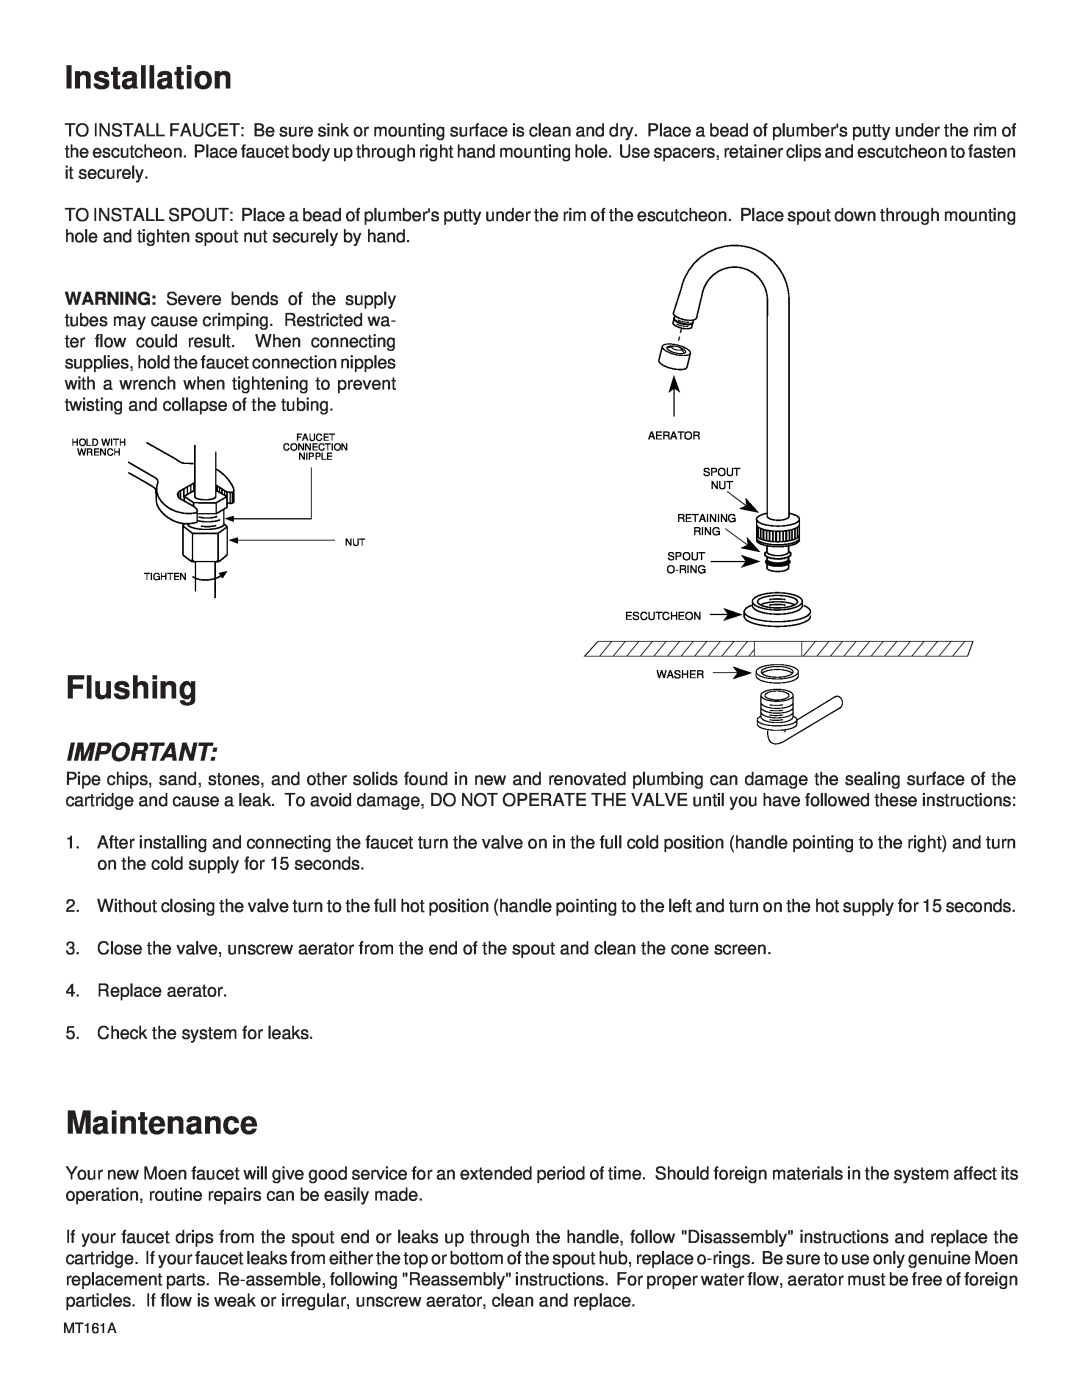 Moen 4901, 8901 installation instructions Installation, Flushing, Maintenance 